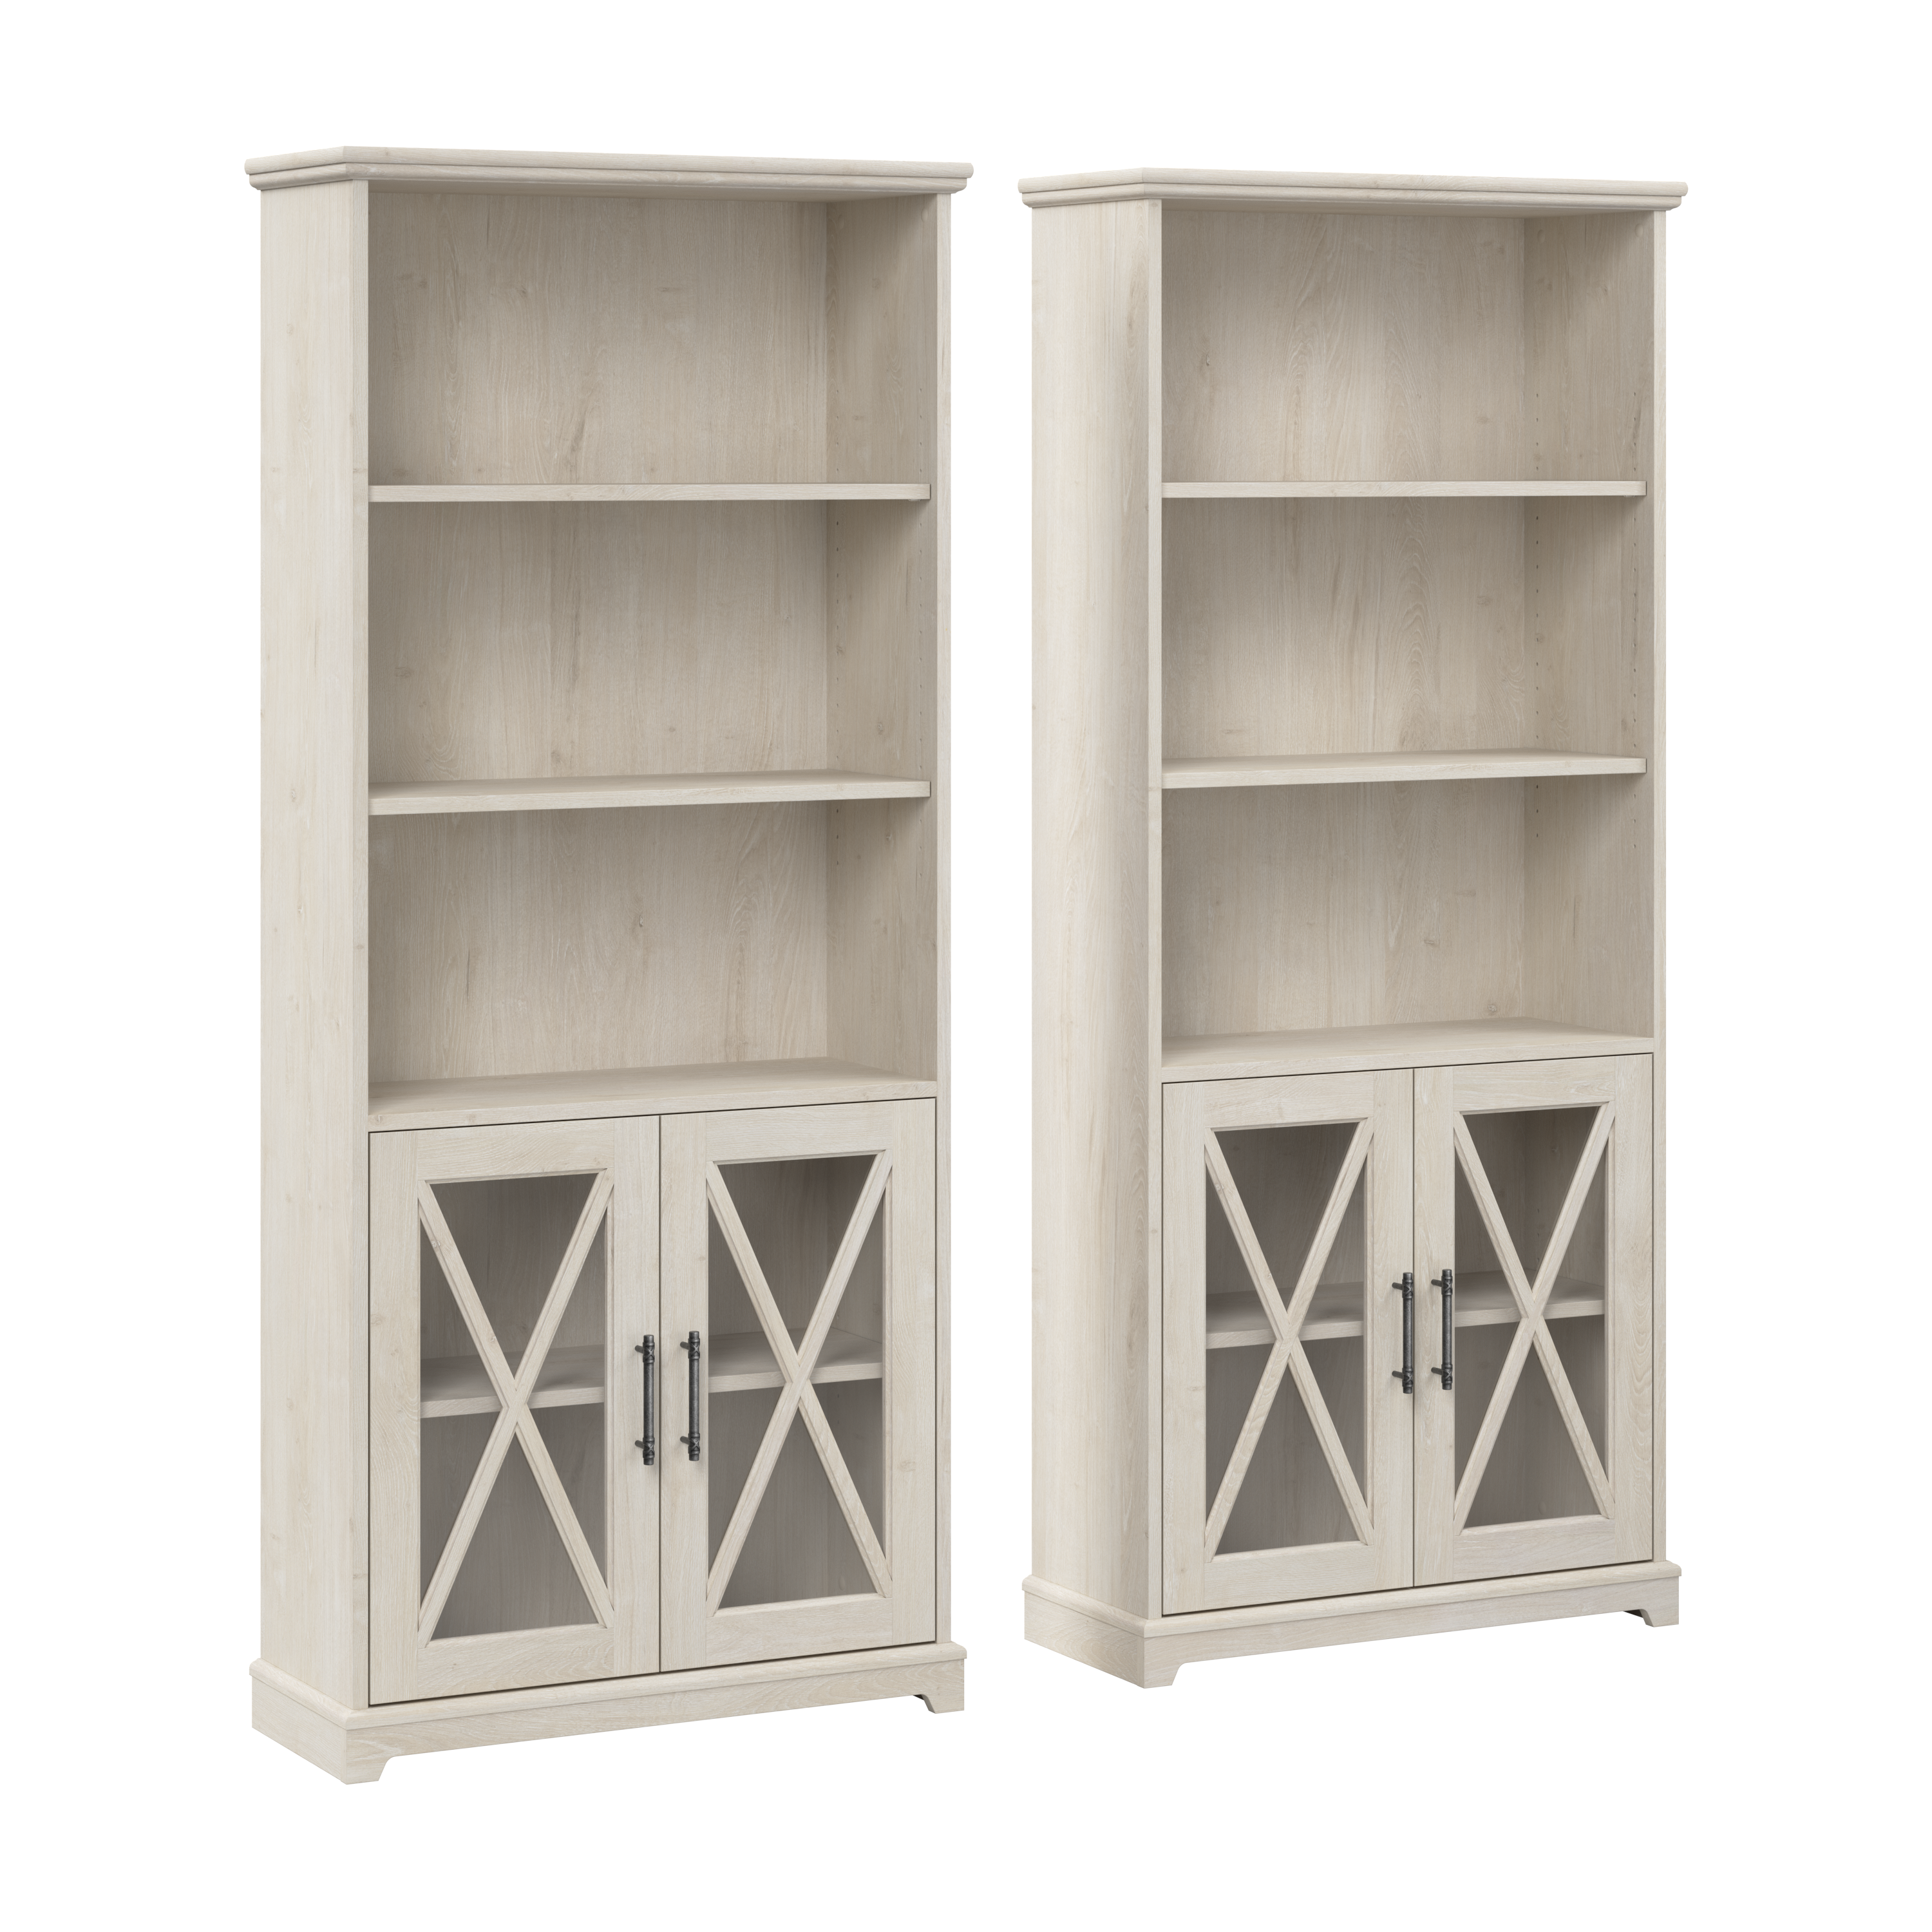 Shop Bush Furniture Lennox Farmhouse 5 Shelf Bookcase with Glass Doors - Set of 2 02 LEN001LW #color_linen white oak